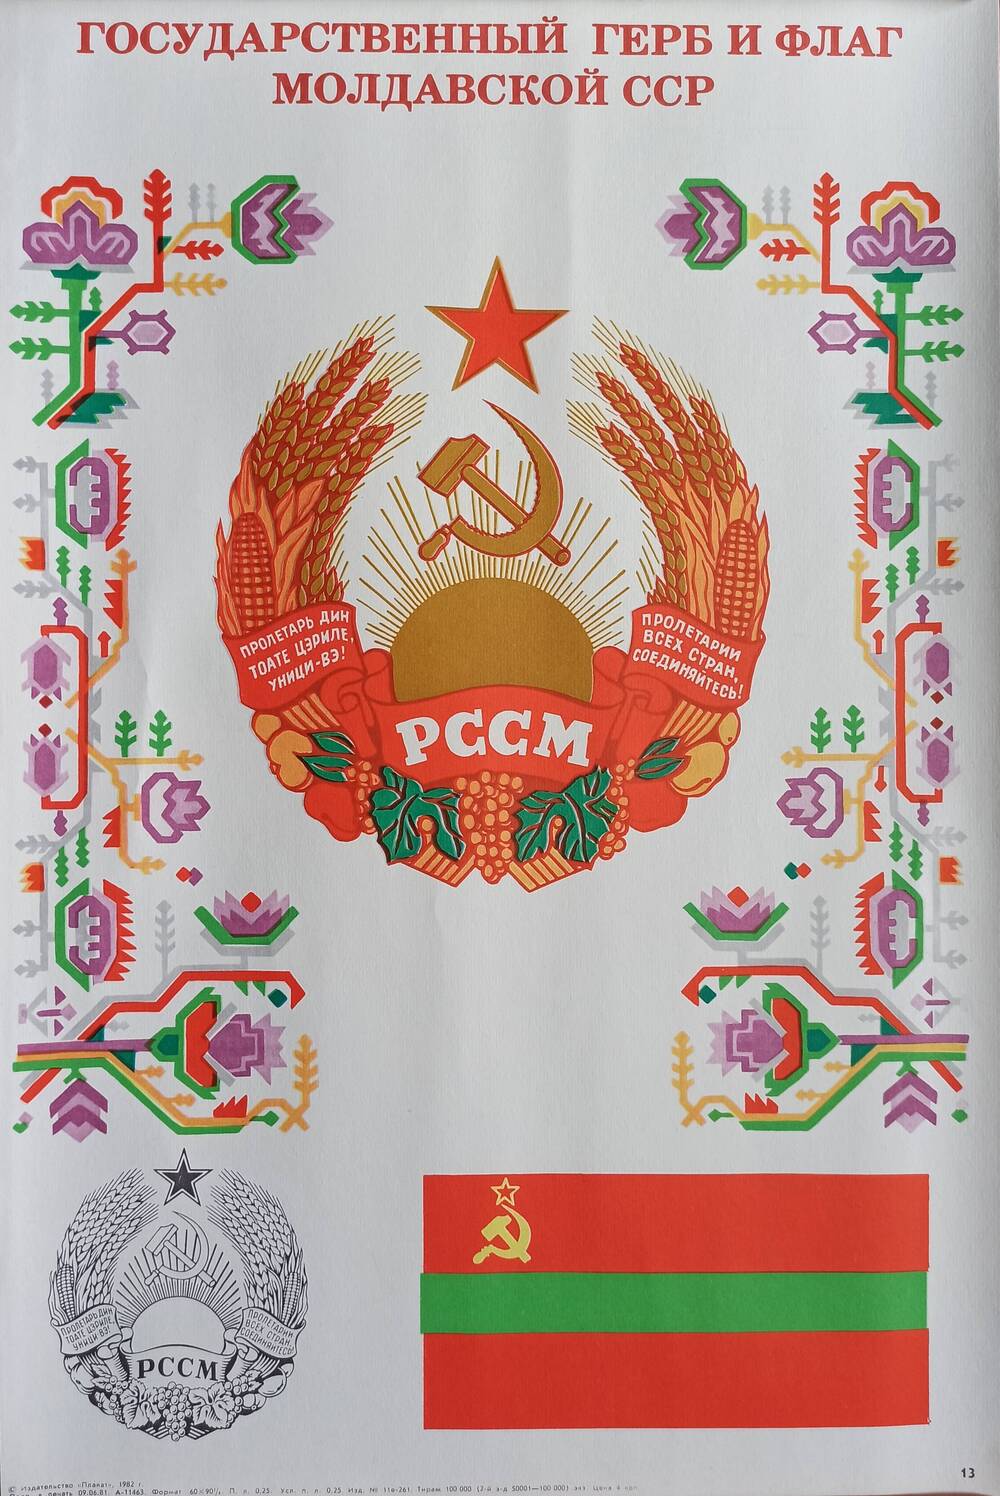 Плакат
№ 13 «Государственный герб и флаг
Молдавской ССР» из комплекта
«Союз нерушимый»